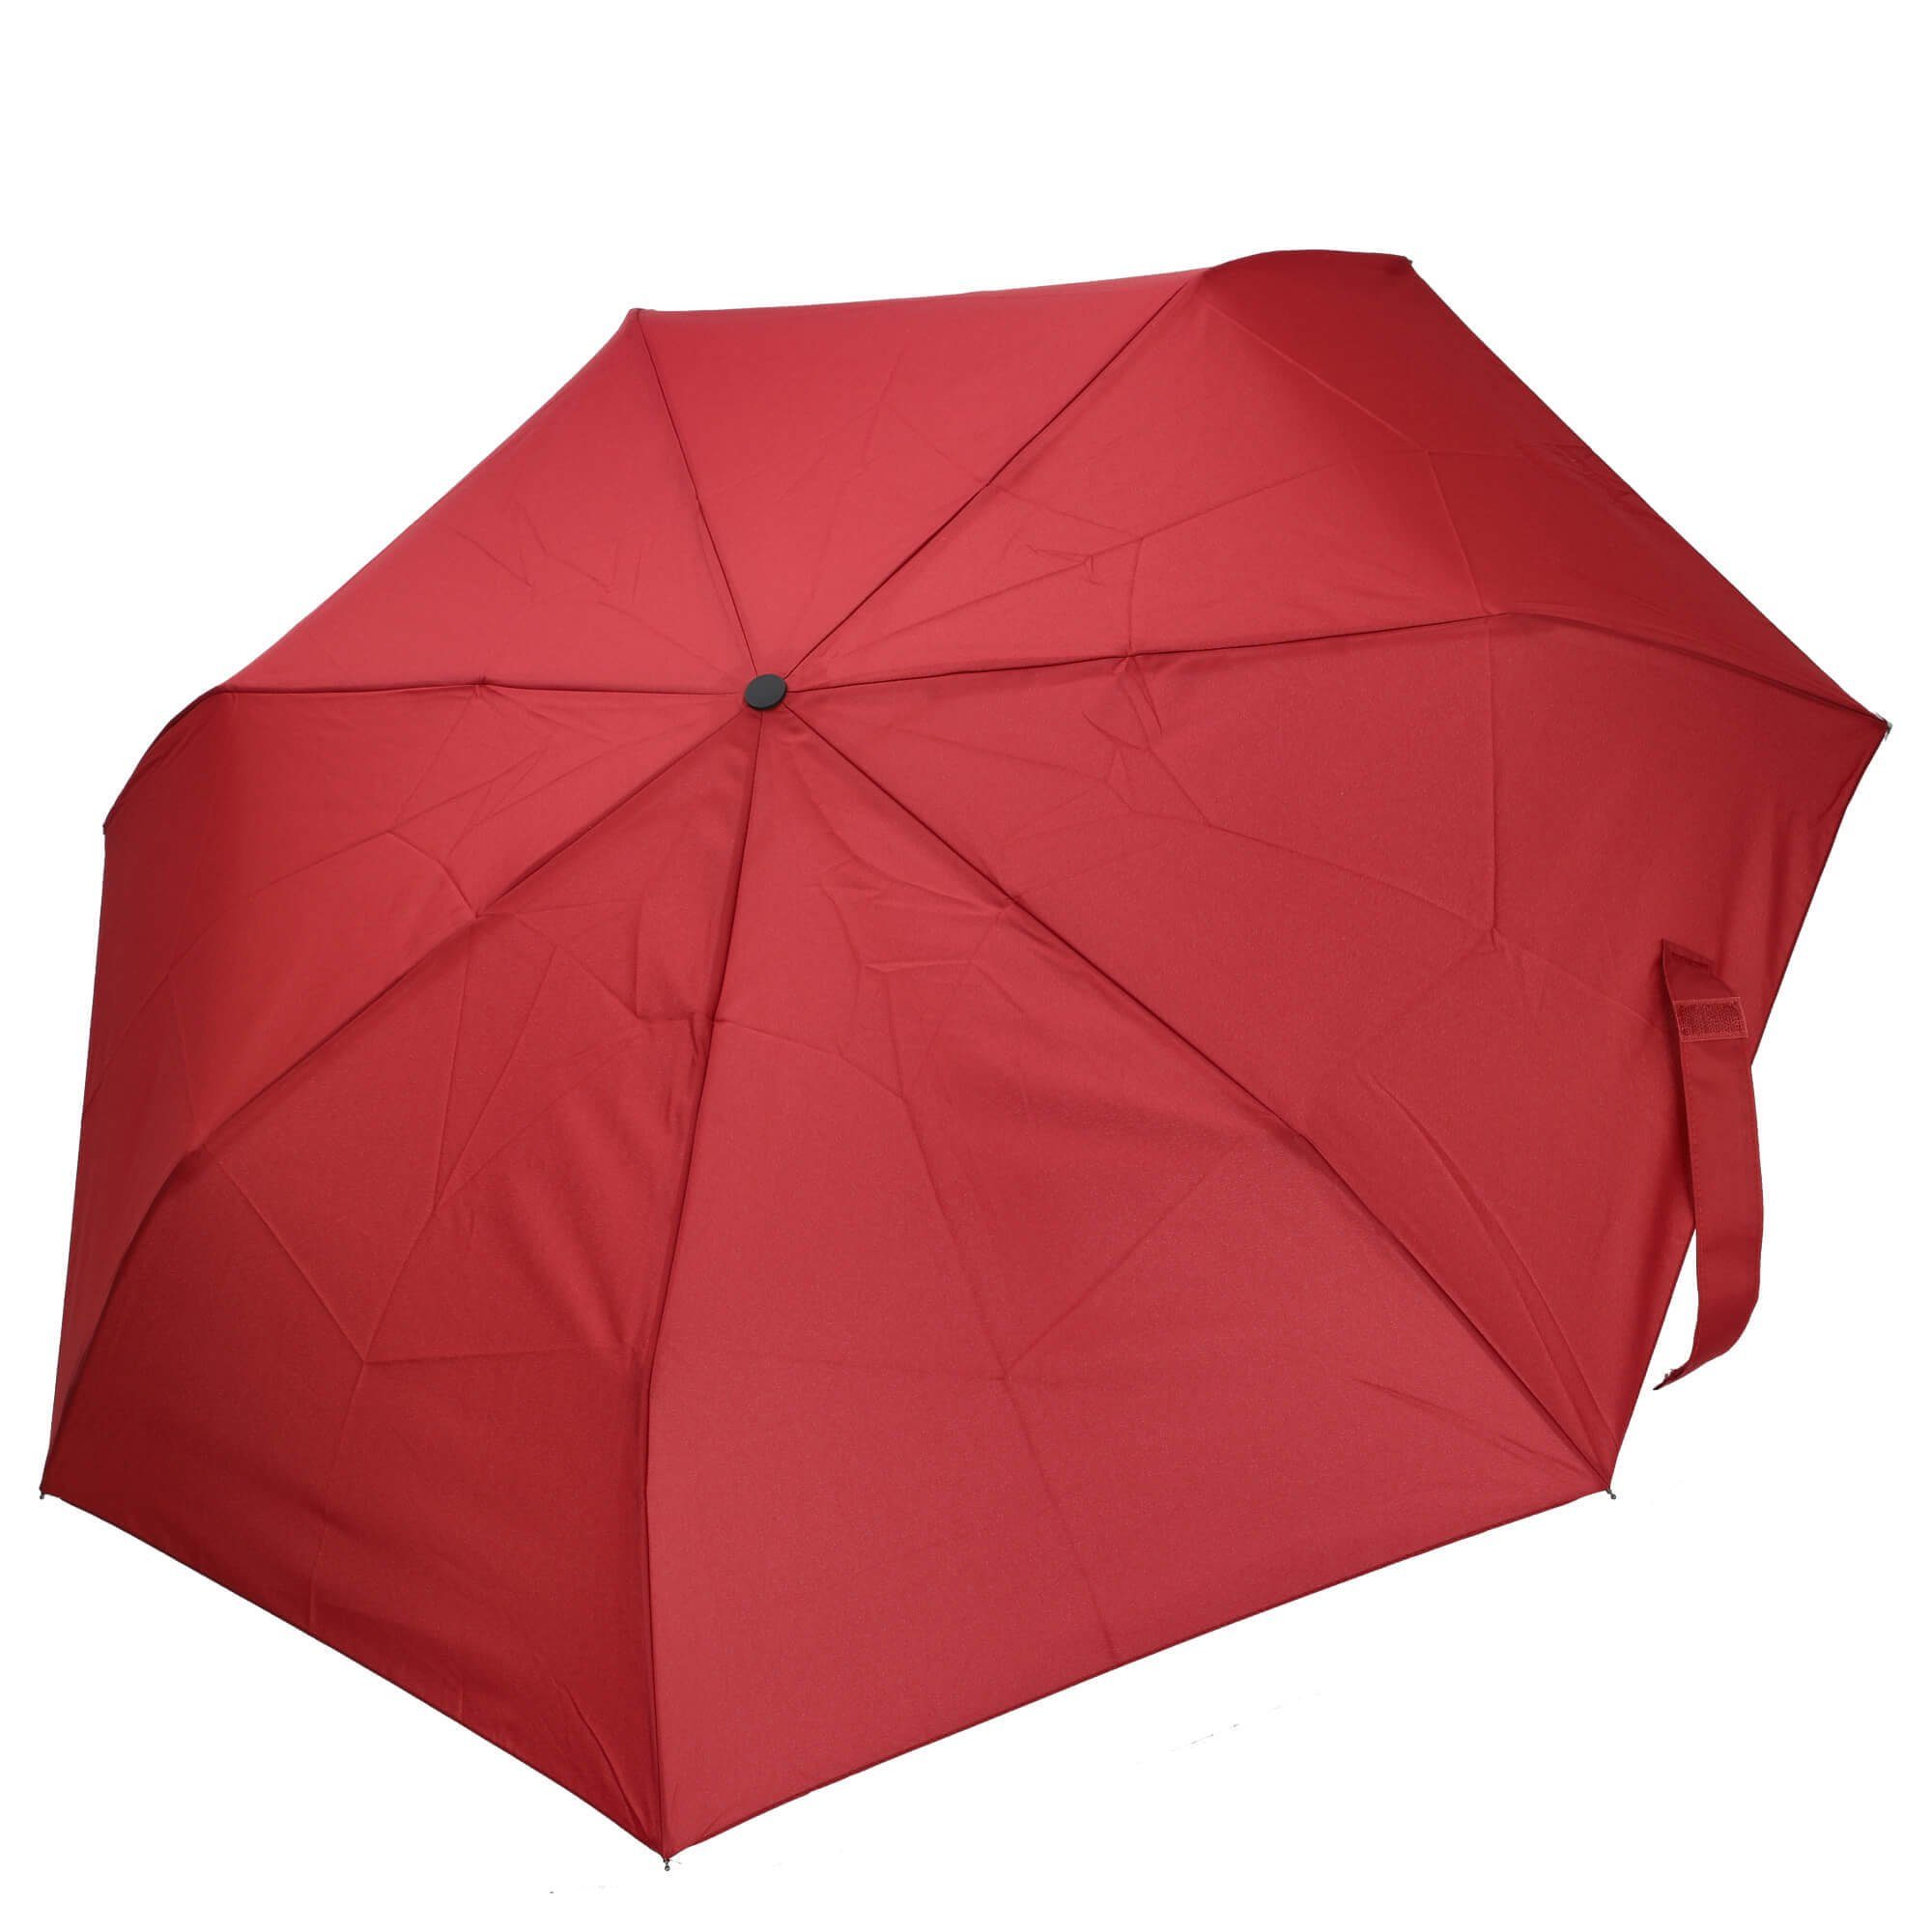 THE BRIDGE Taschenregenschirm Ombrelli - Regenschirm 96 cm rosso